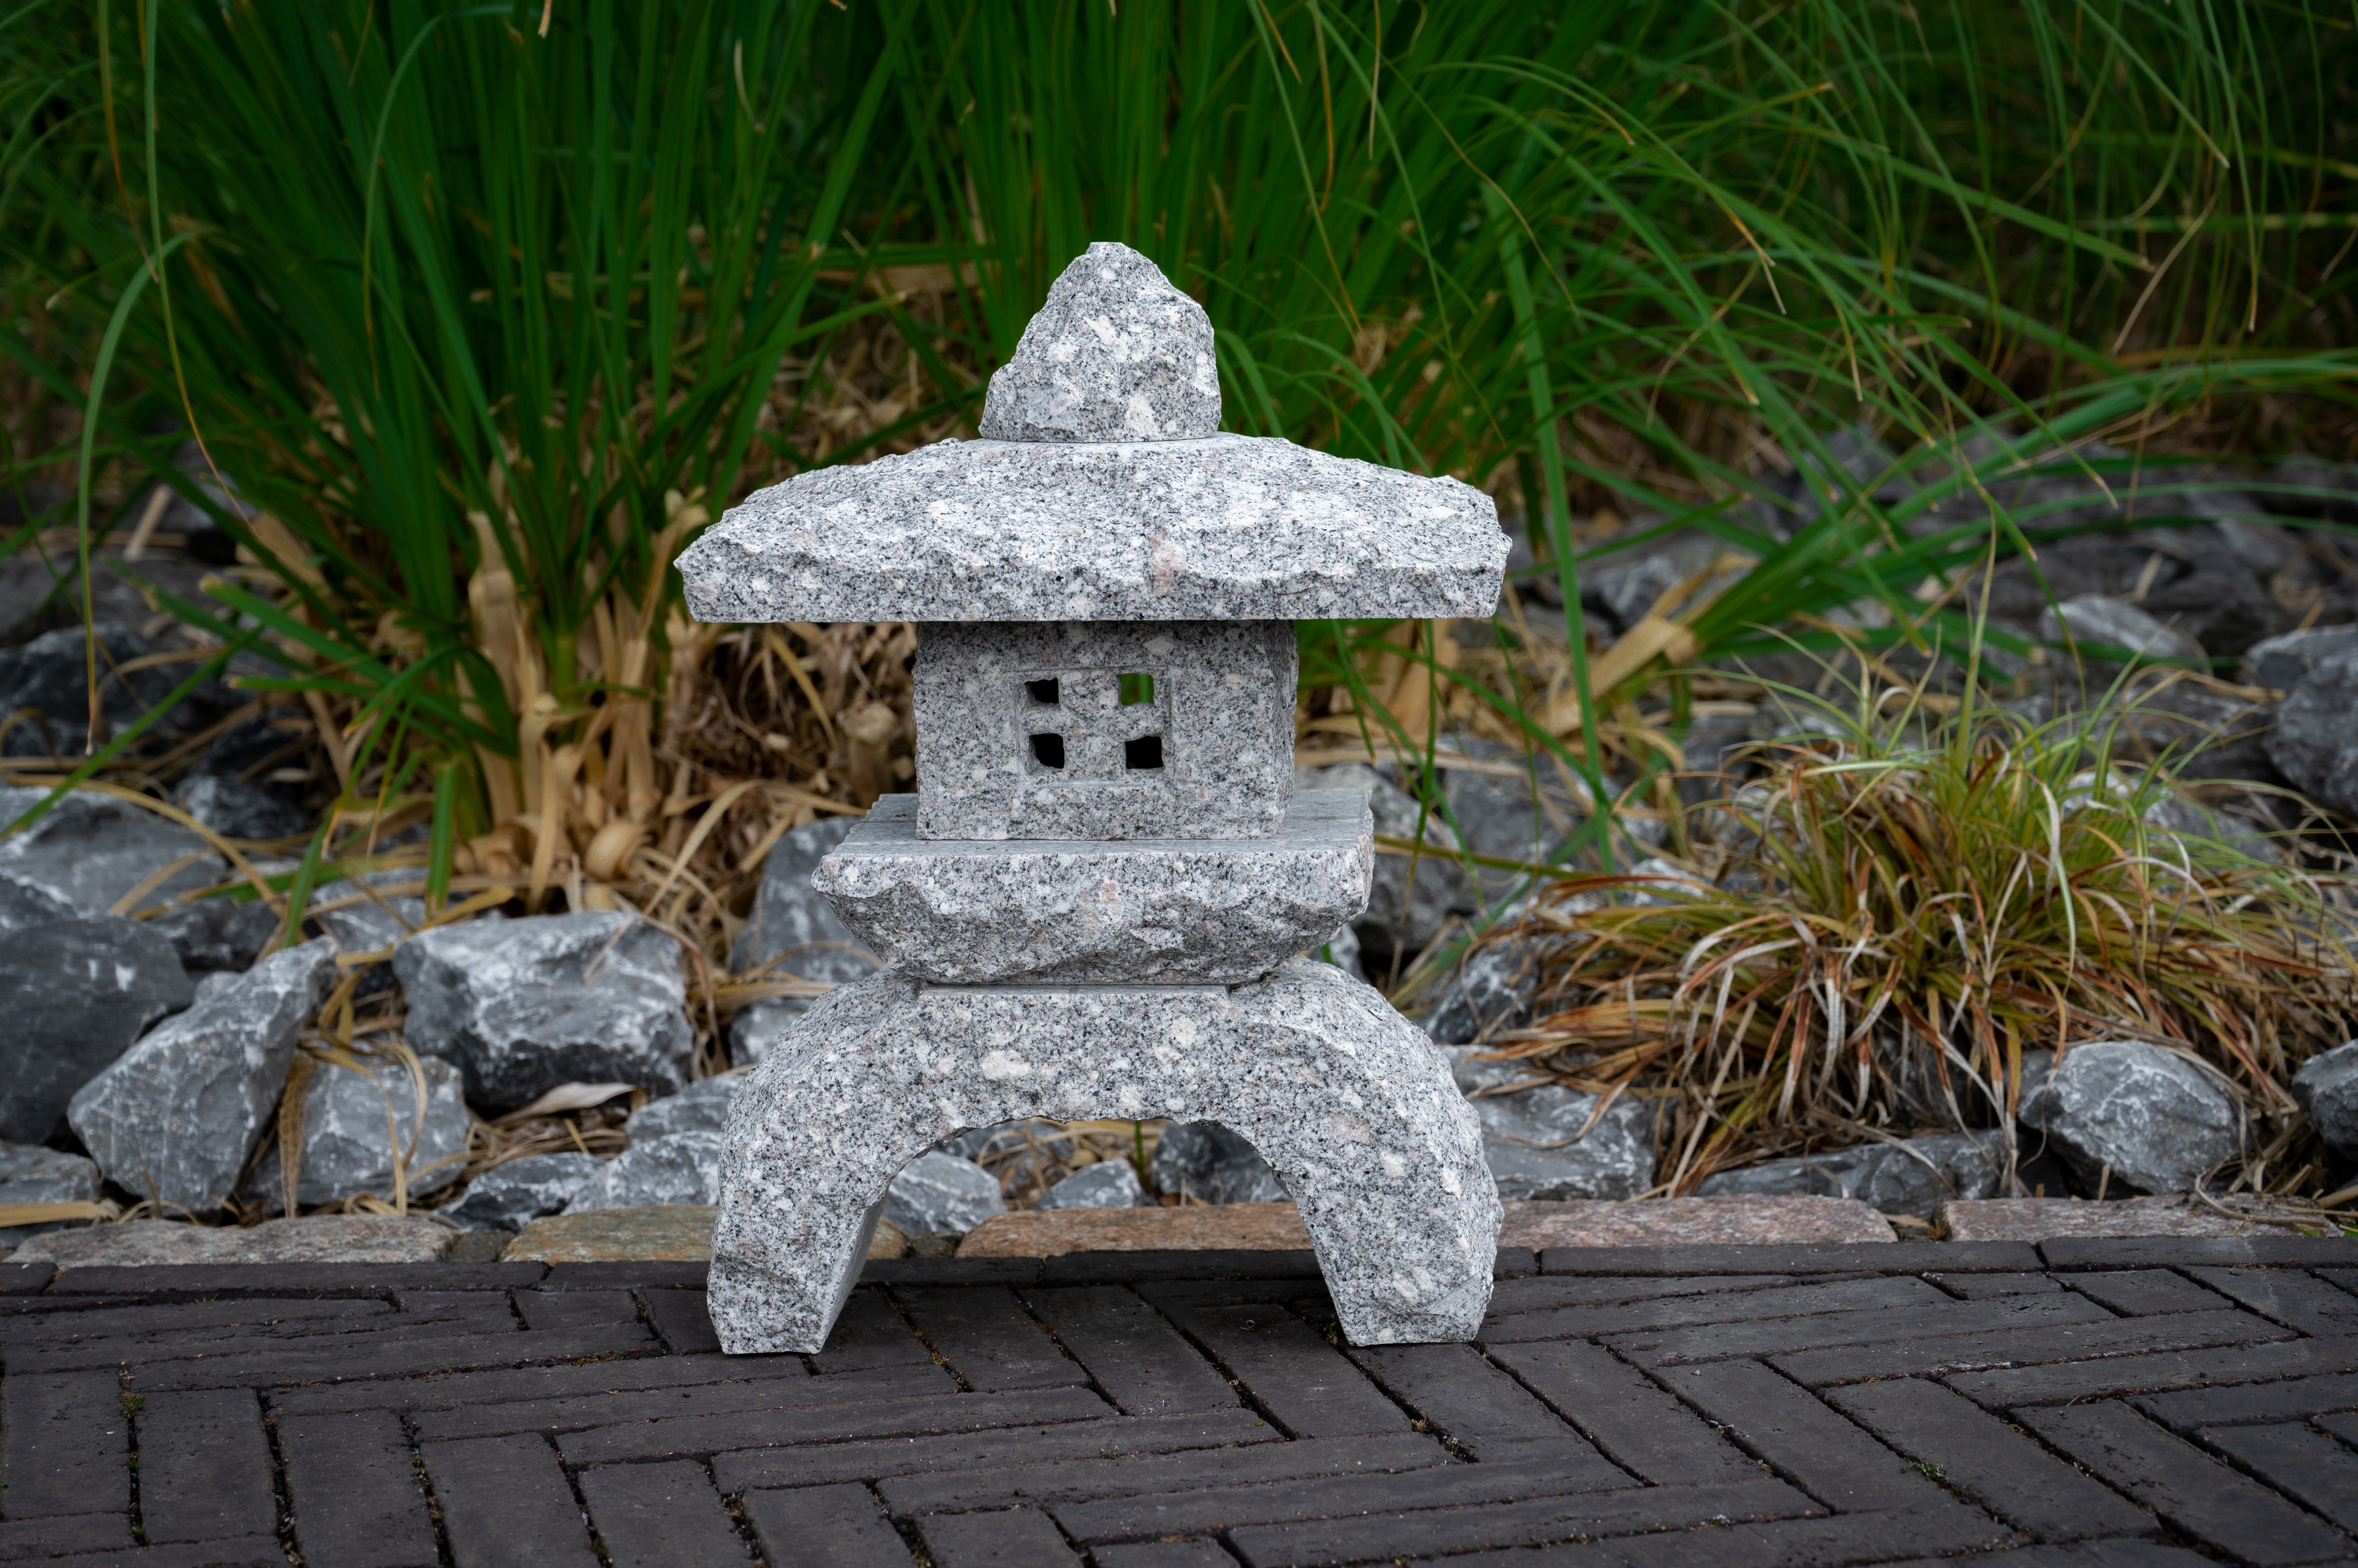 IDYL Gartenfigur Granit Naturstein Laterne, Regen gegen – Granitstein UV-Strahlung. und sehr robust – ein Naturprodukt Frost, witterungsbeständig